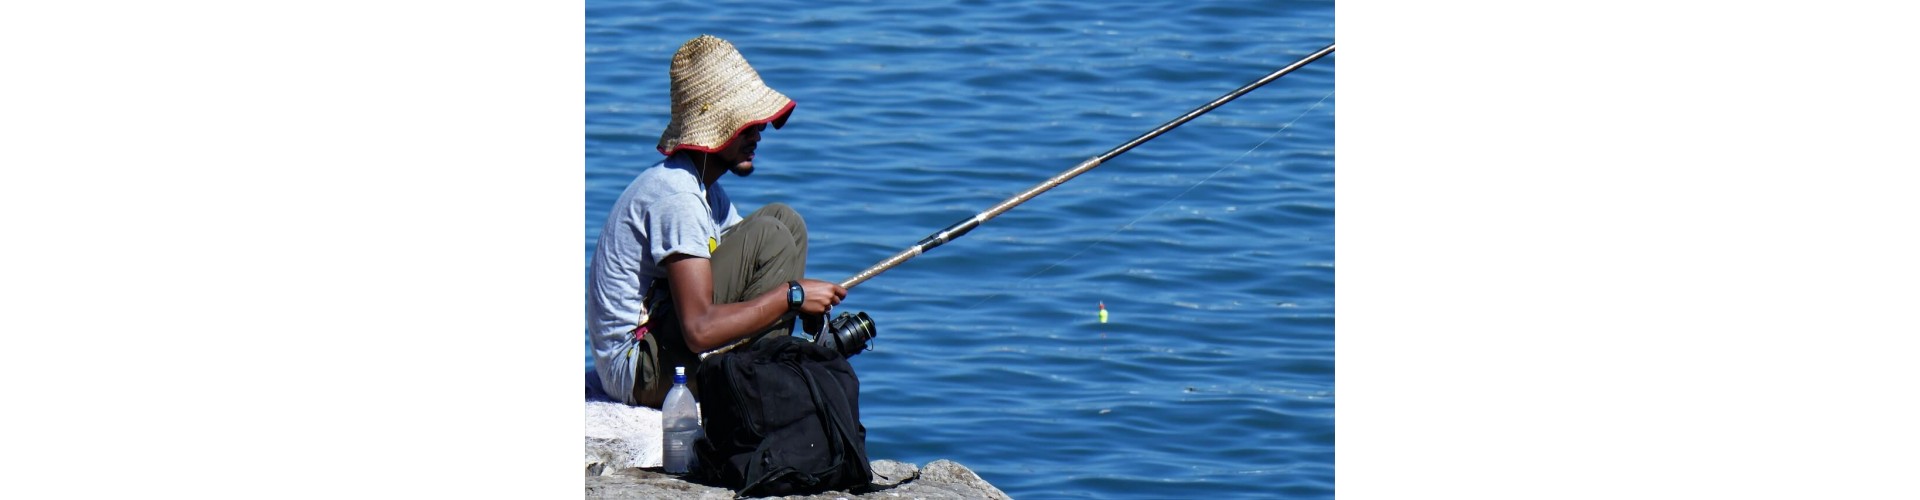 Рыболовные товары KAIDA: Качество, проверенное временем